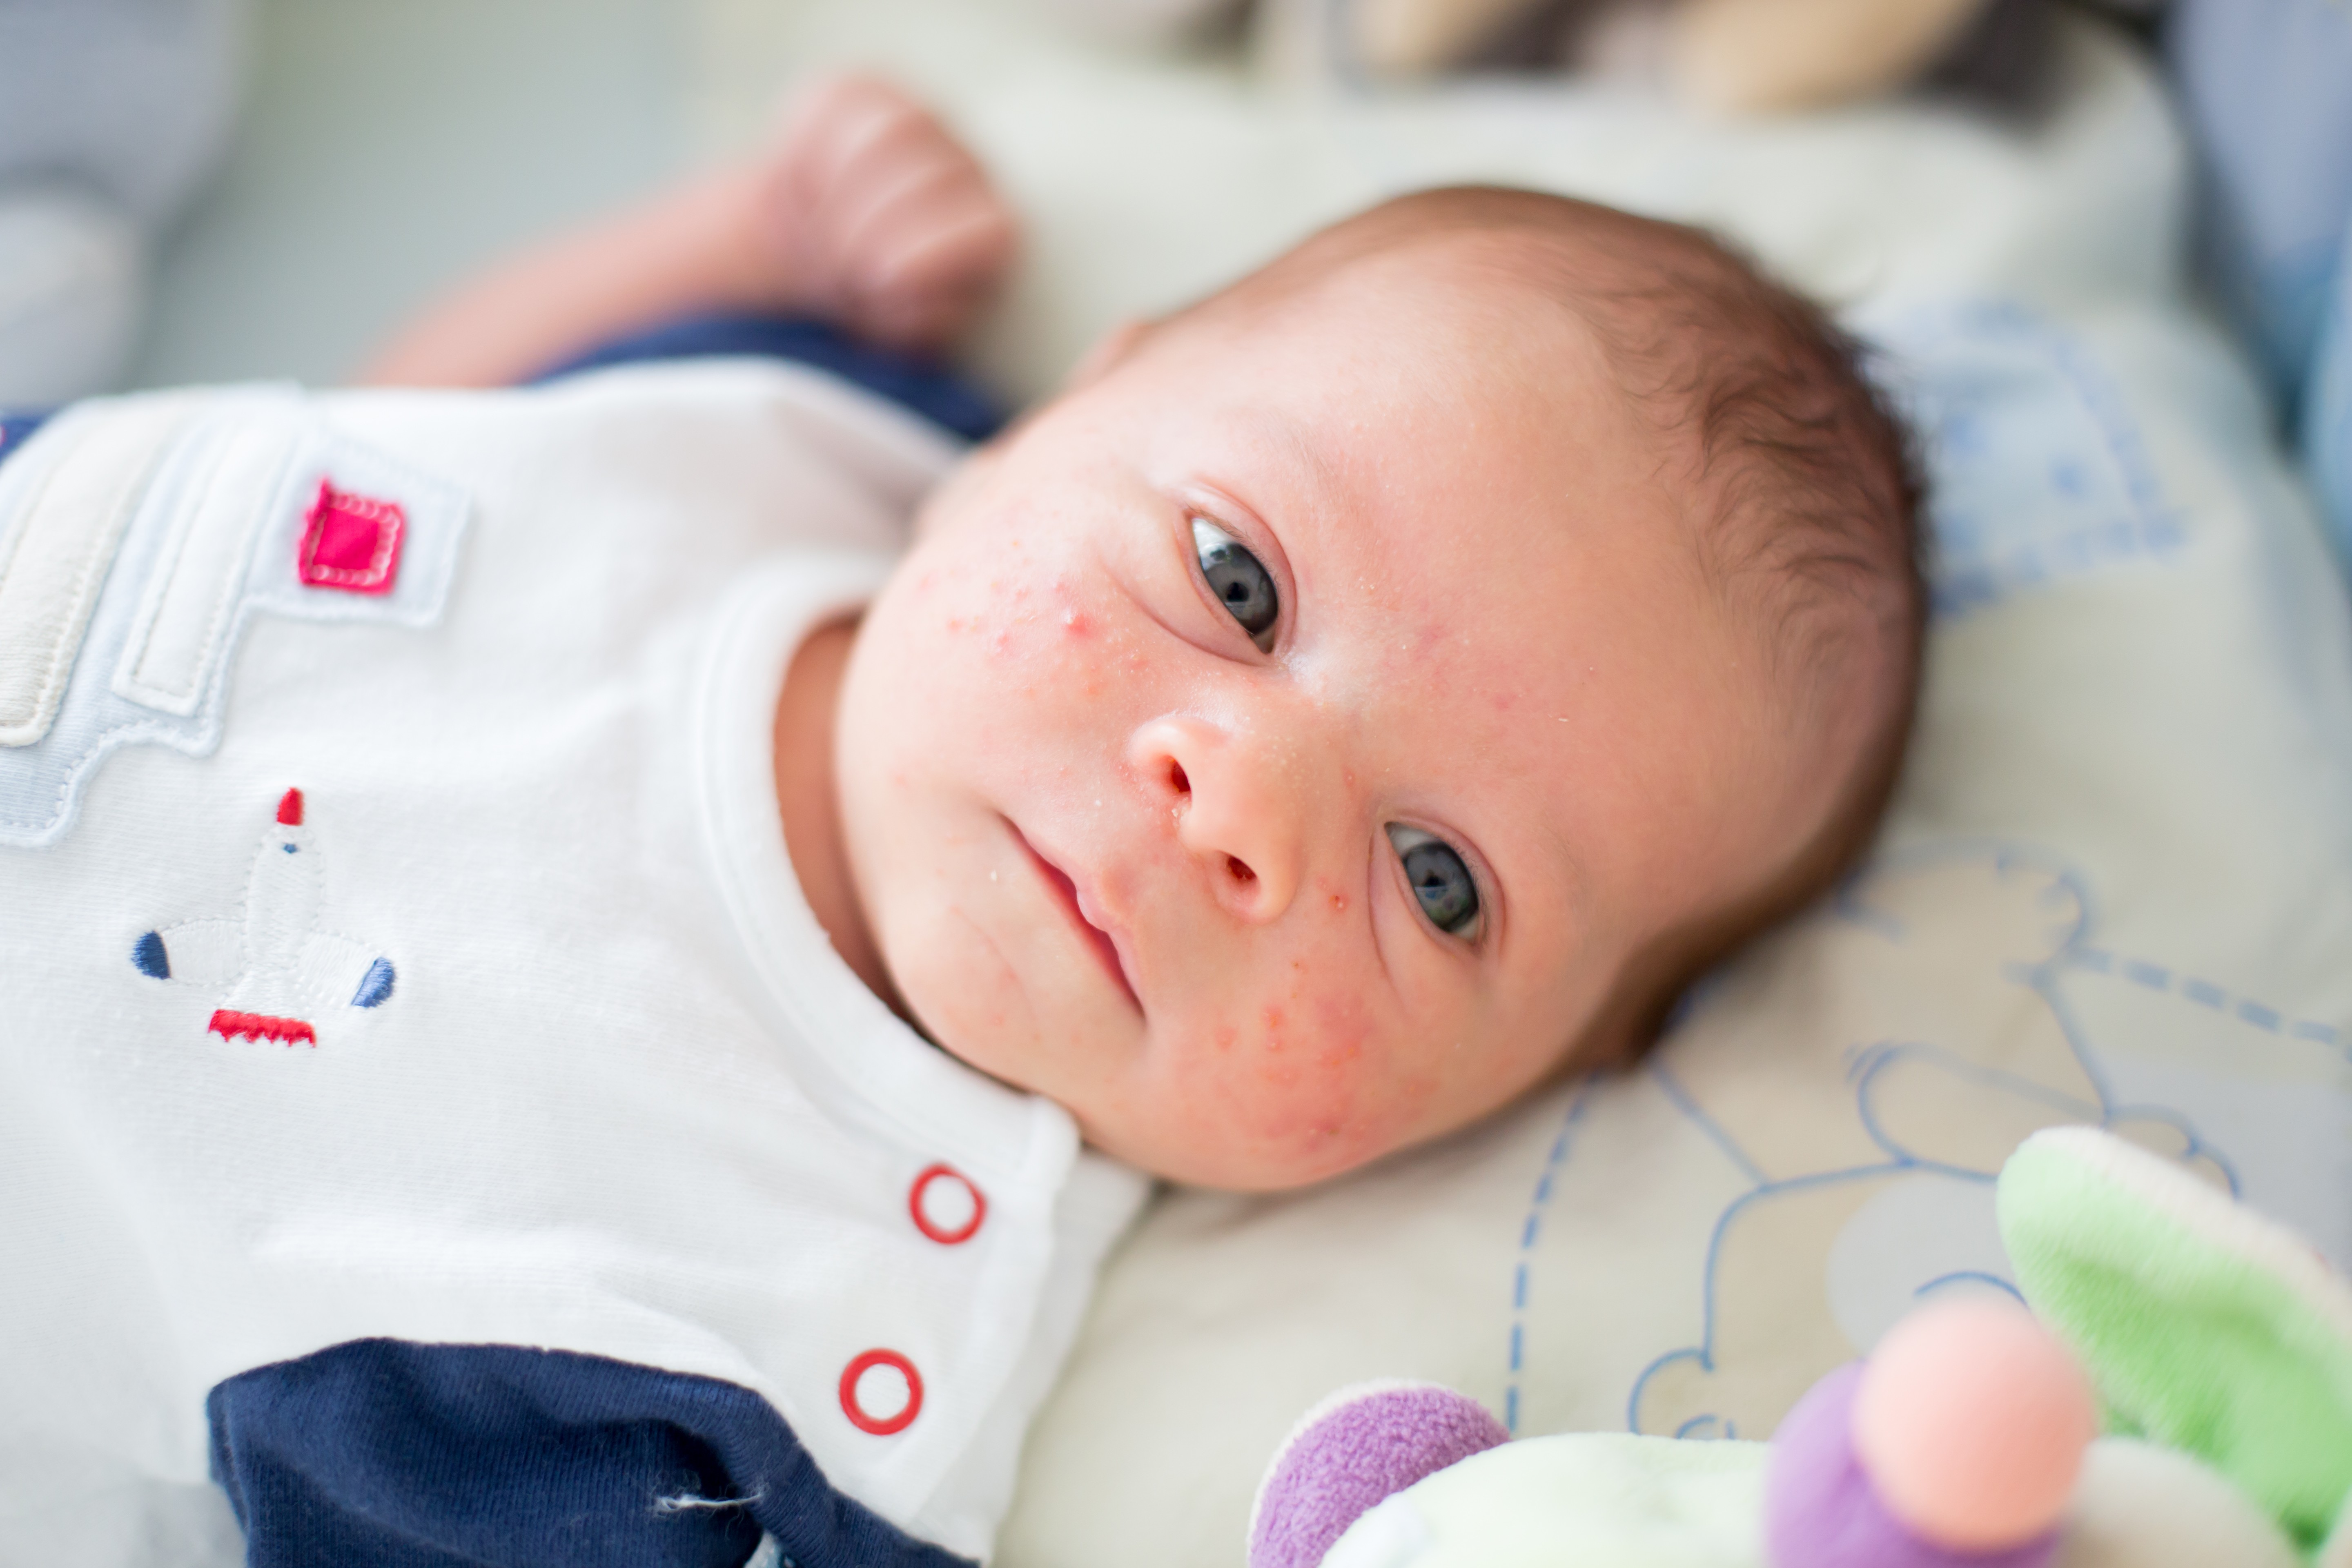 Brotoejas no bebê aparecem no verão, mas, no inverno, surgem por conta do excesso de roupas (Foto: Getty Images)